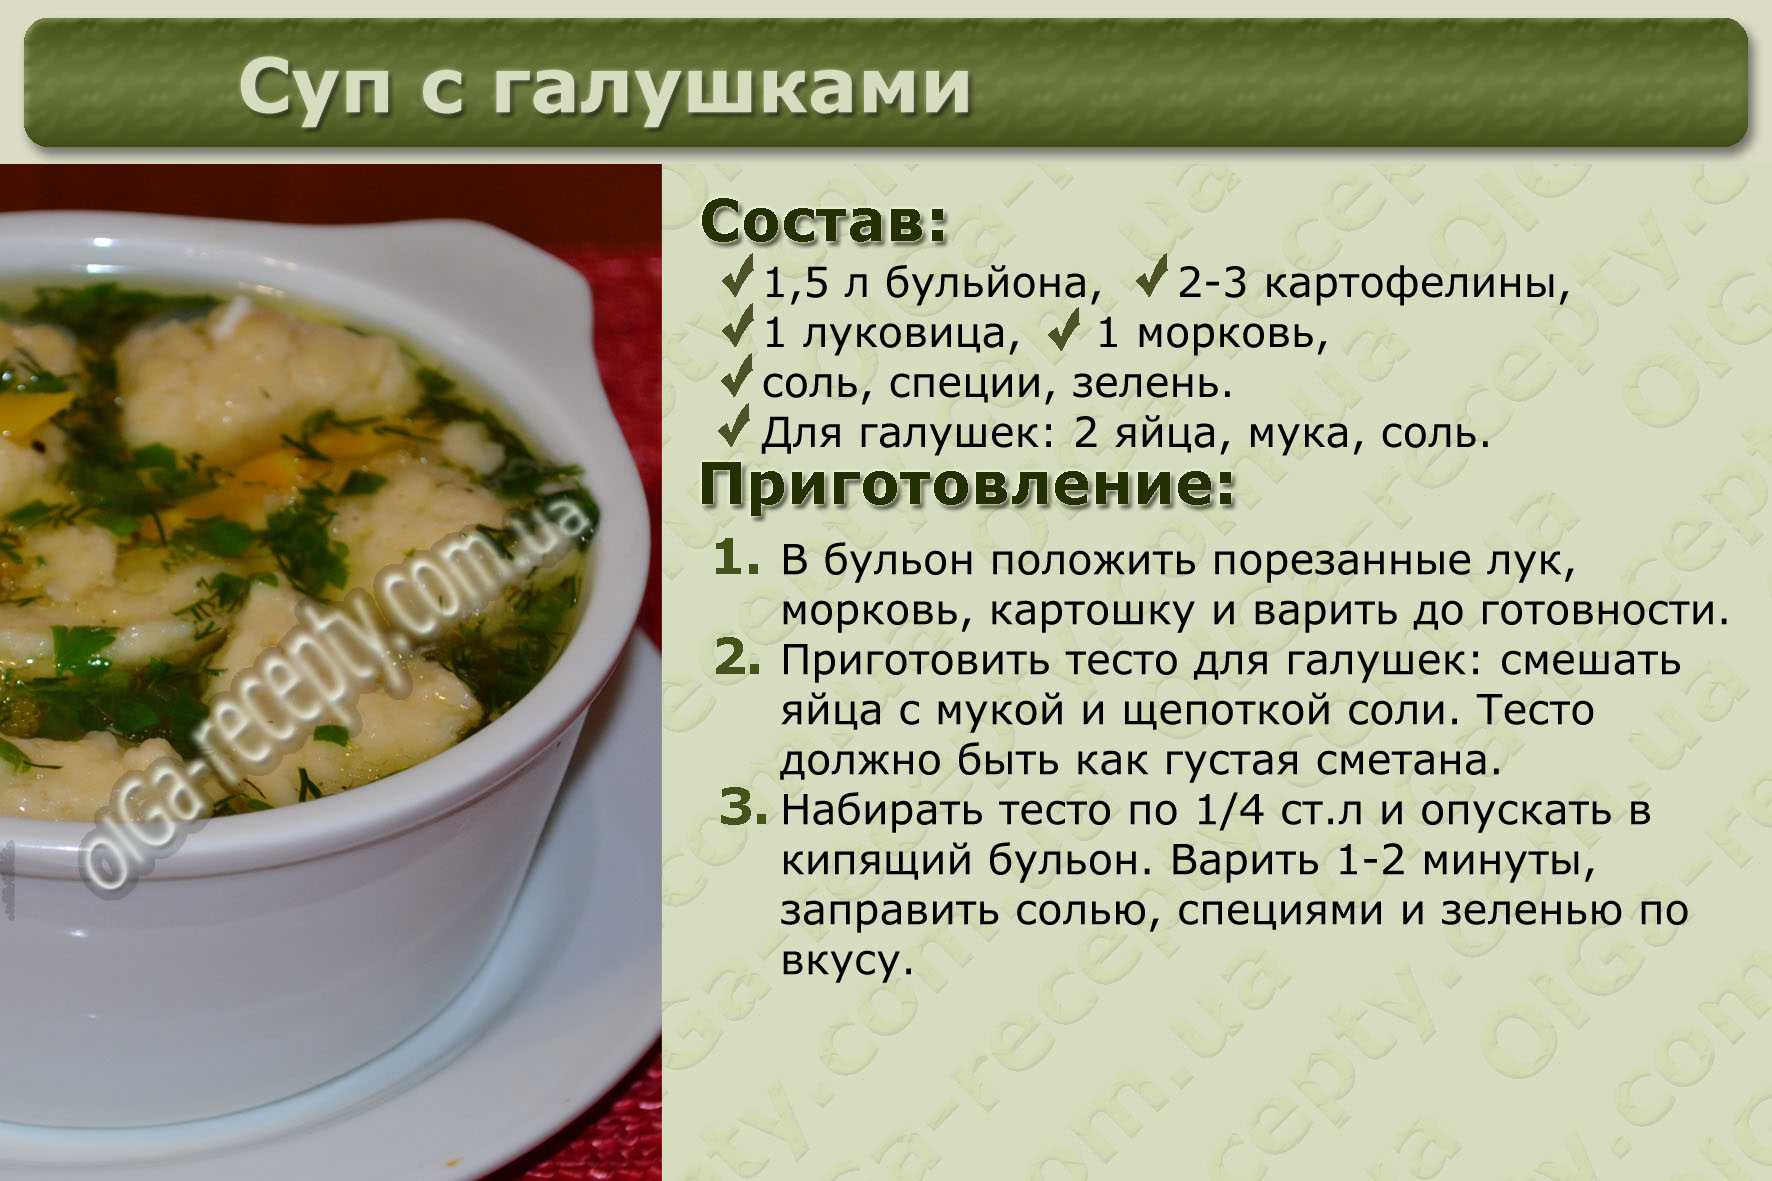 Сколько риса надо на суп. Рецепты в картинках. Рецепты первых блюд с описанием. Рецепты супов в картинках с описанием. Рецепты в картинках с описанием.